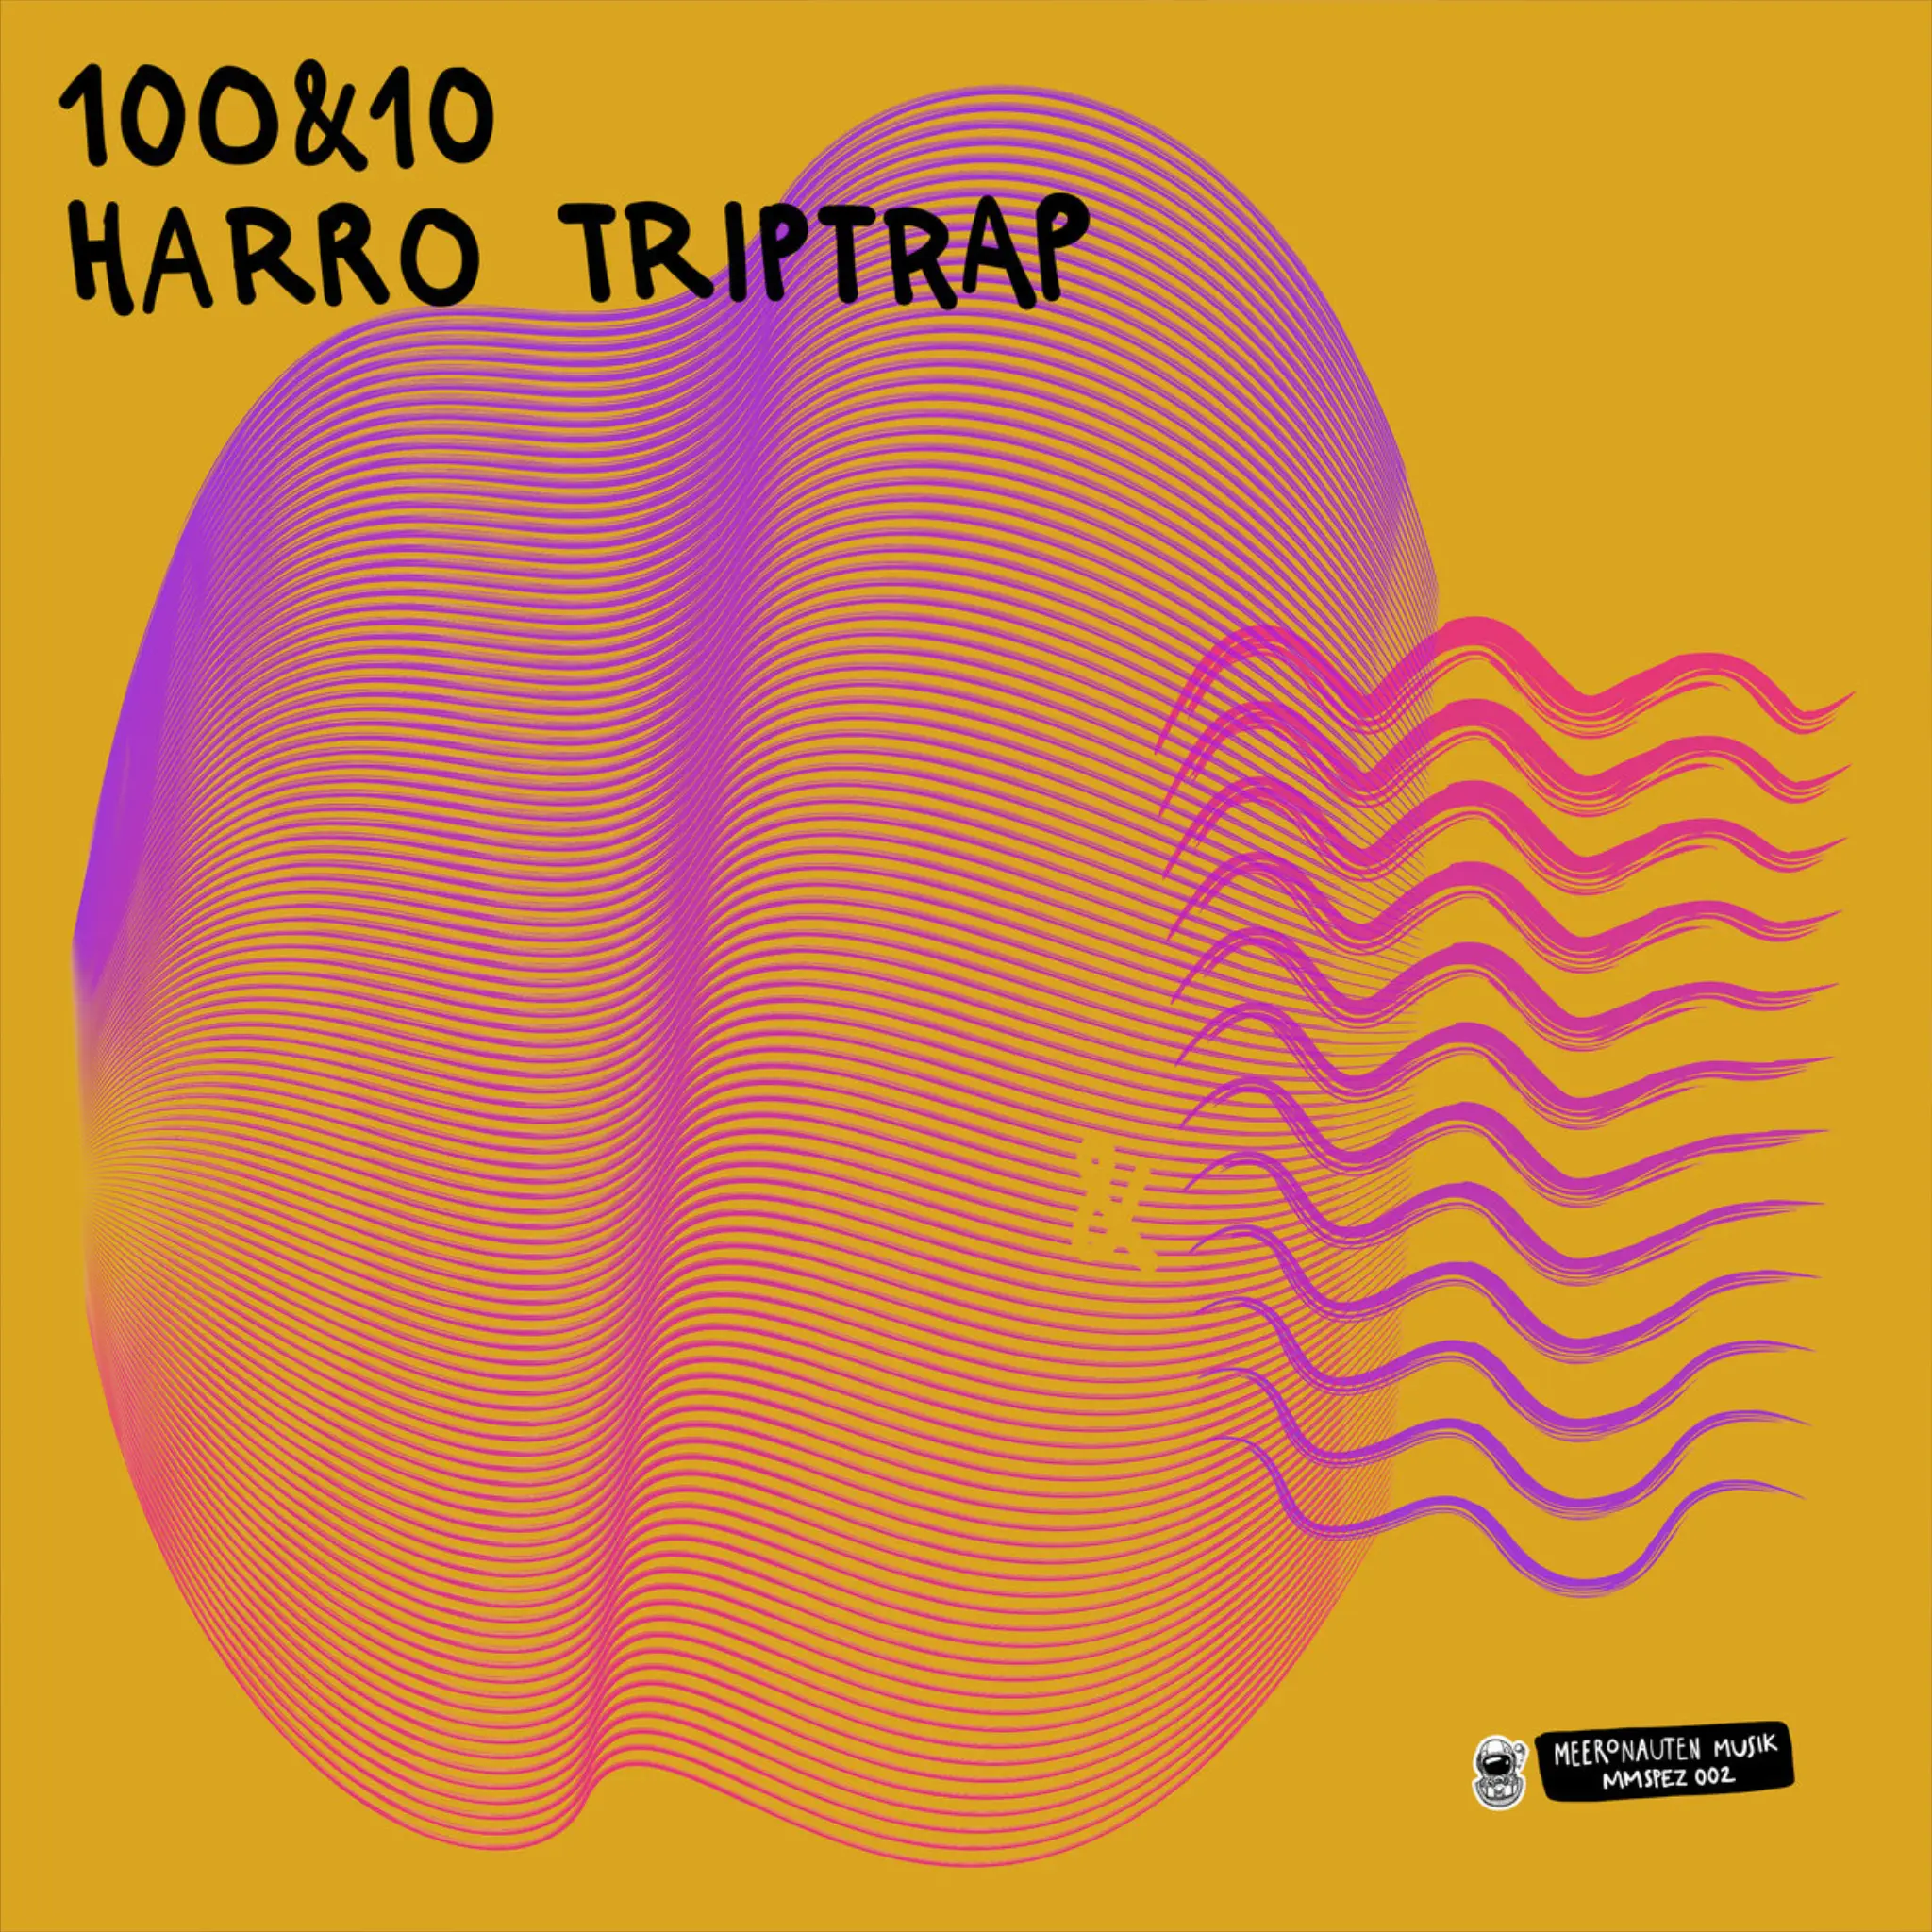 Harro Triptrap - 100&10 LP